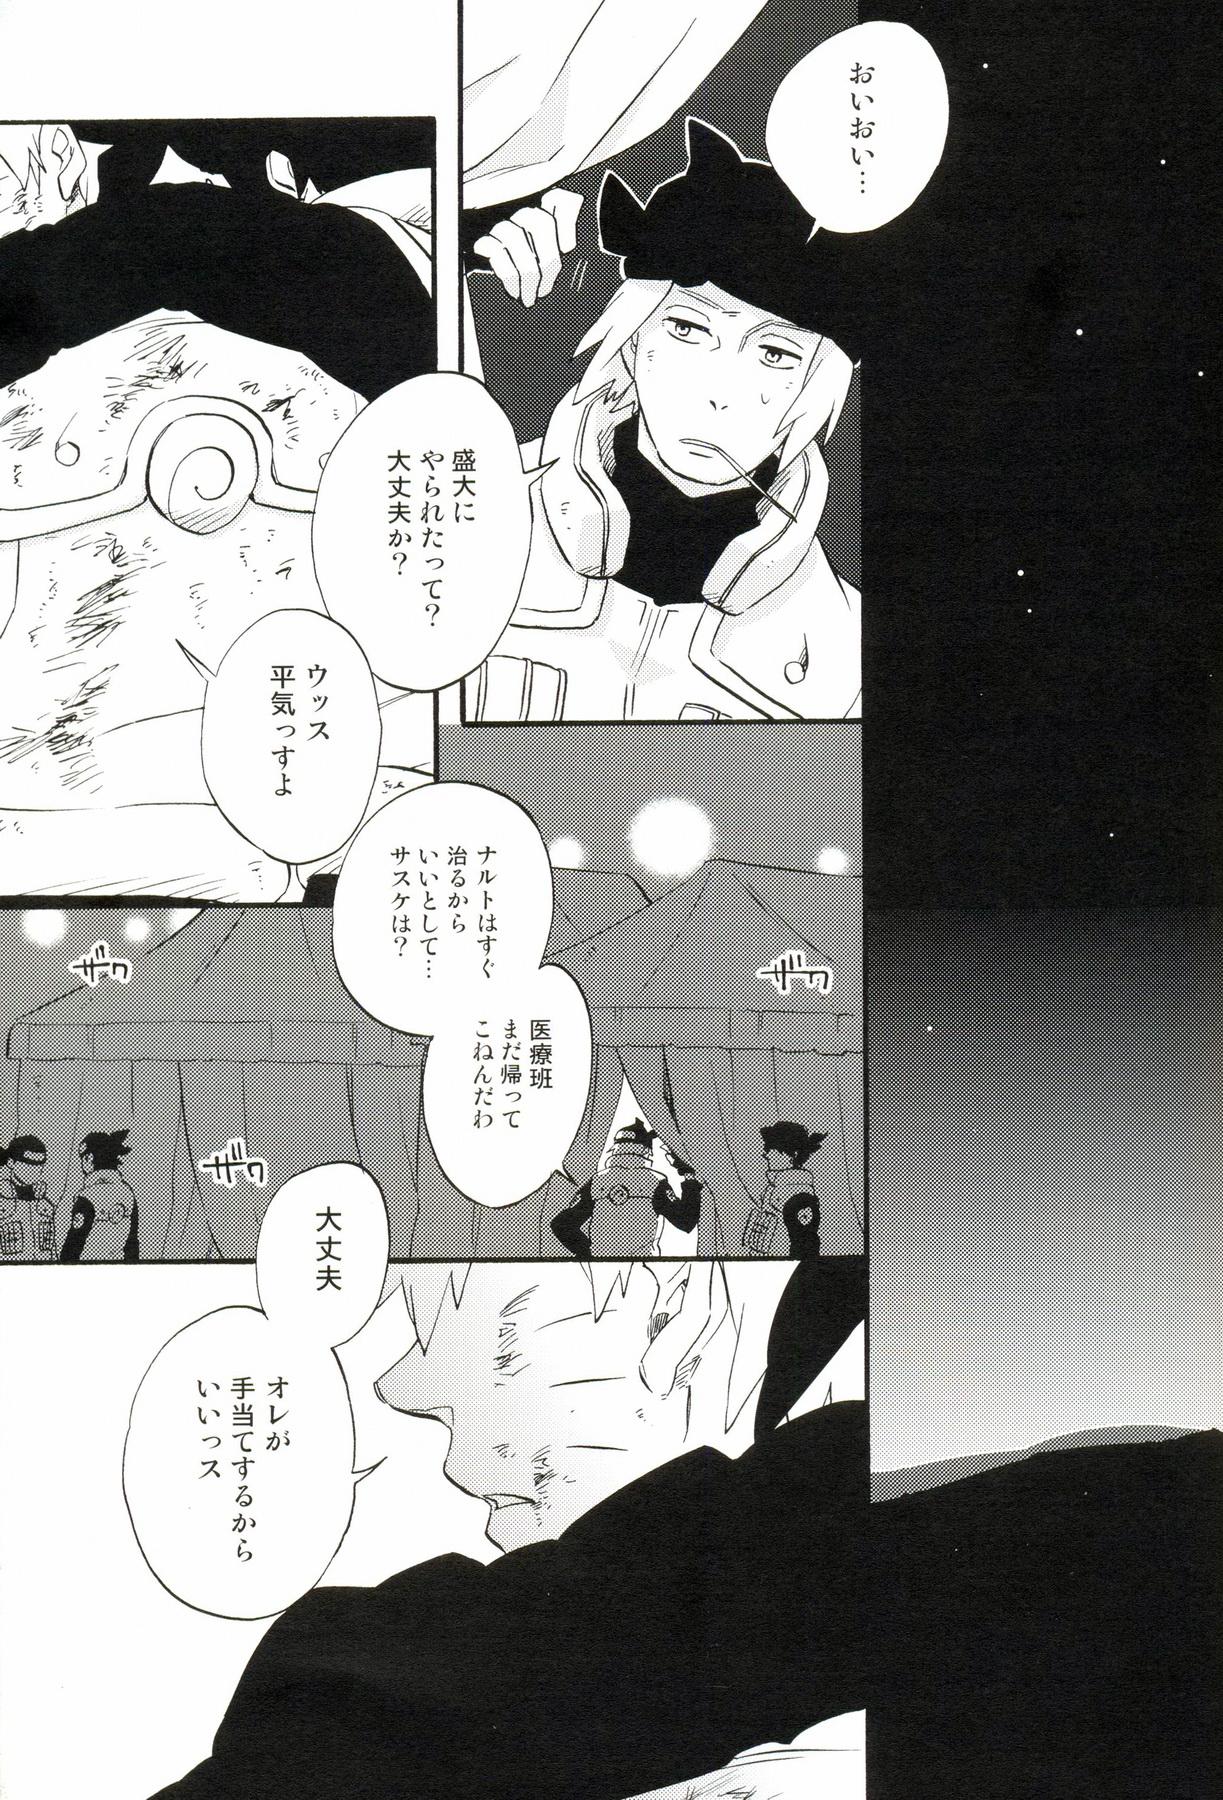 Beurette Hakumei no kyouki by 10-Rankai - Naruto Bucetuda - Page 4